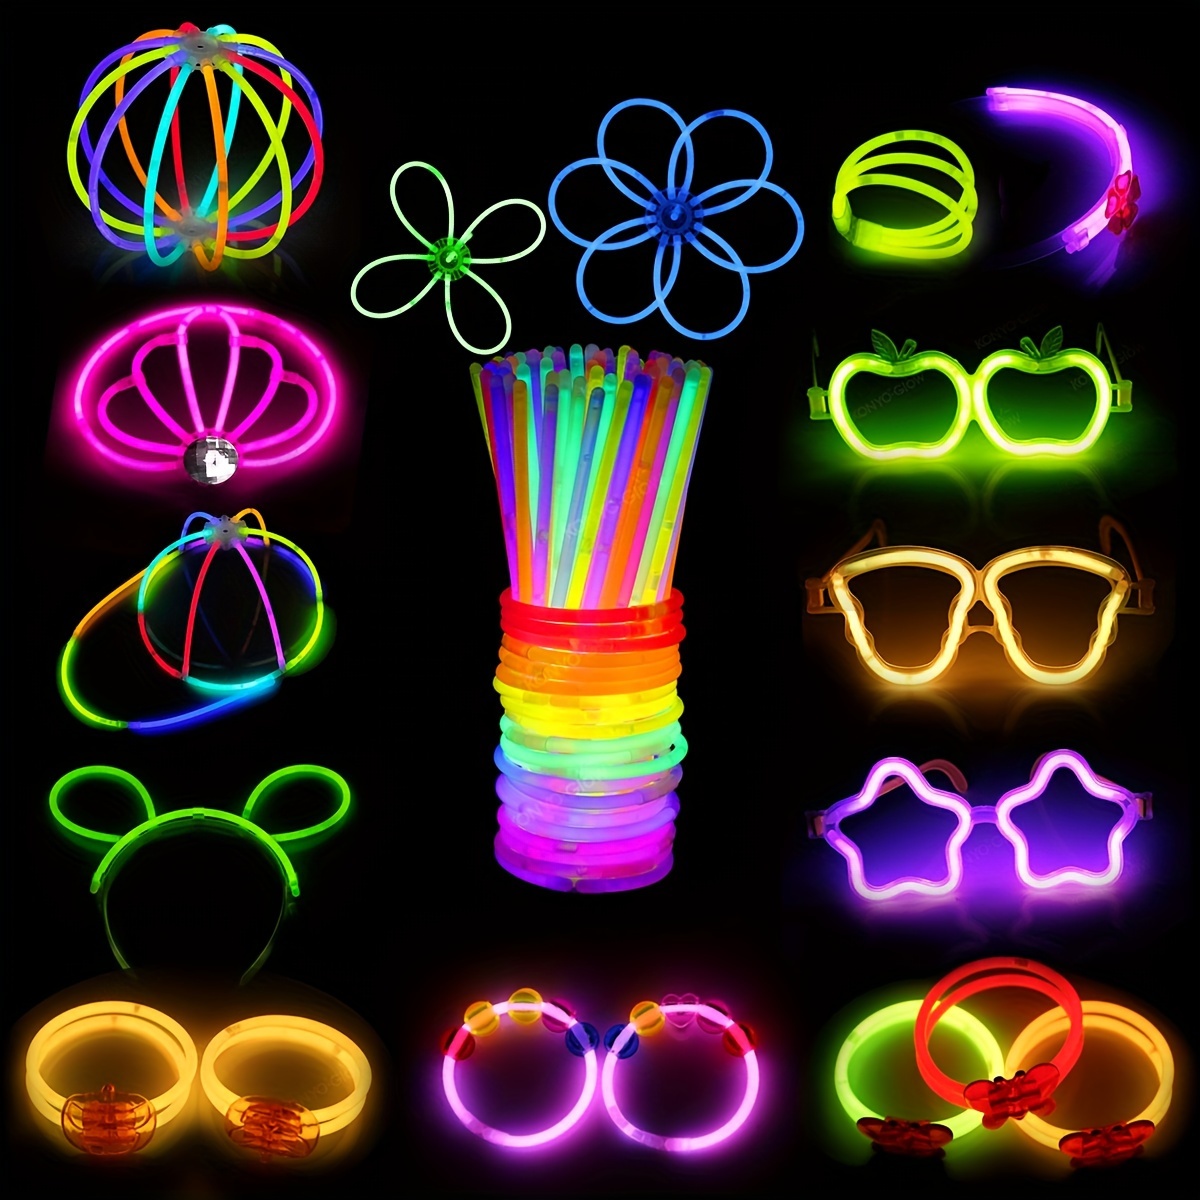 50 Uds. De barras luminosas LED de colores, concierto intermitente, fiesta  de carnaval, regalo de cumpleaños, gran vara mágica con cordones